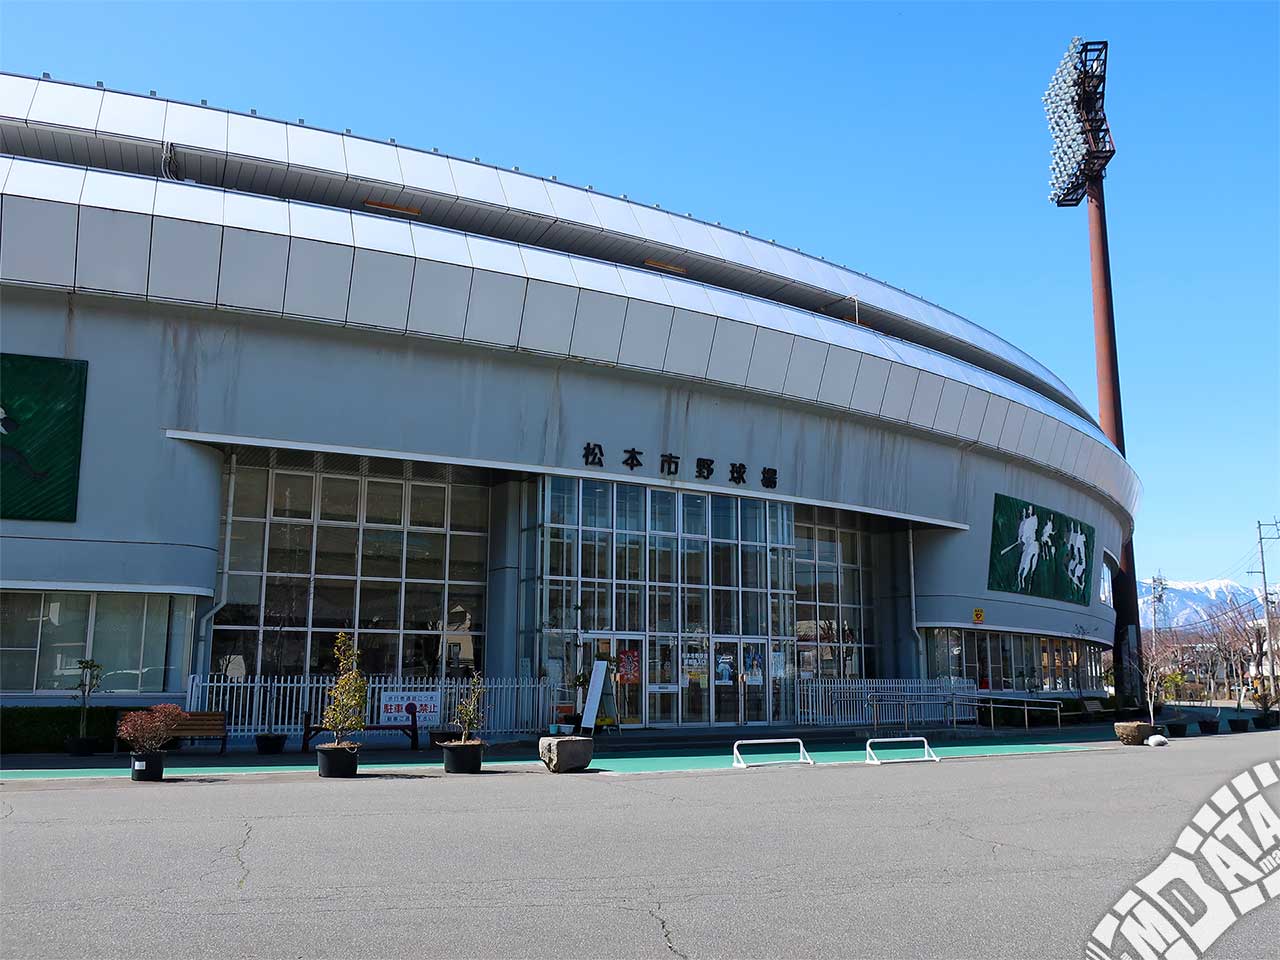 松本市野球場の写真 撮影日:2019/4/4 Photo taken on 2019/04/04